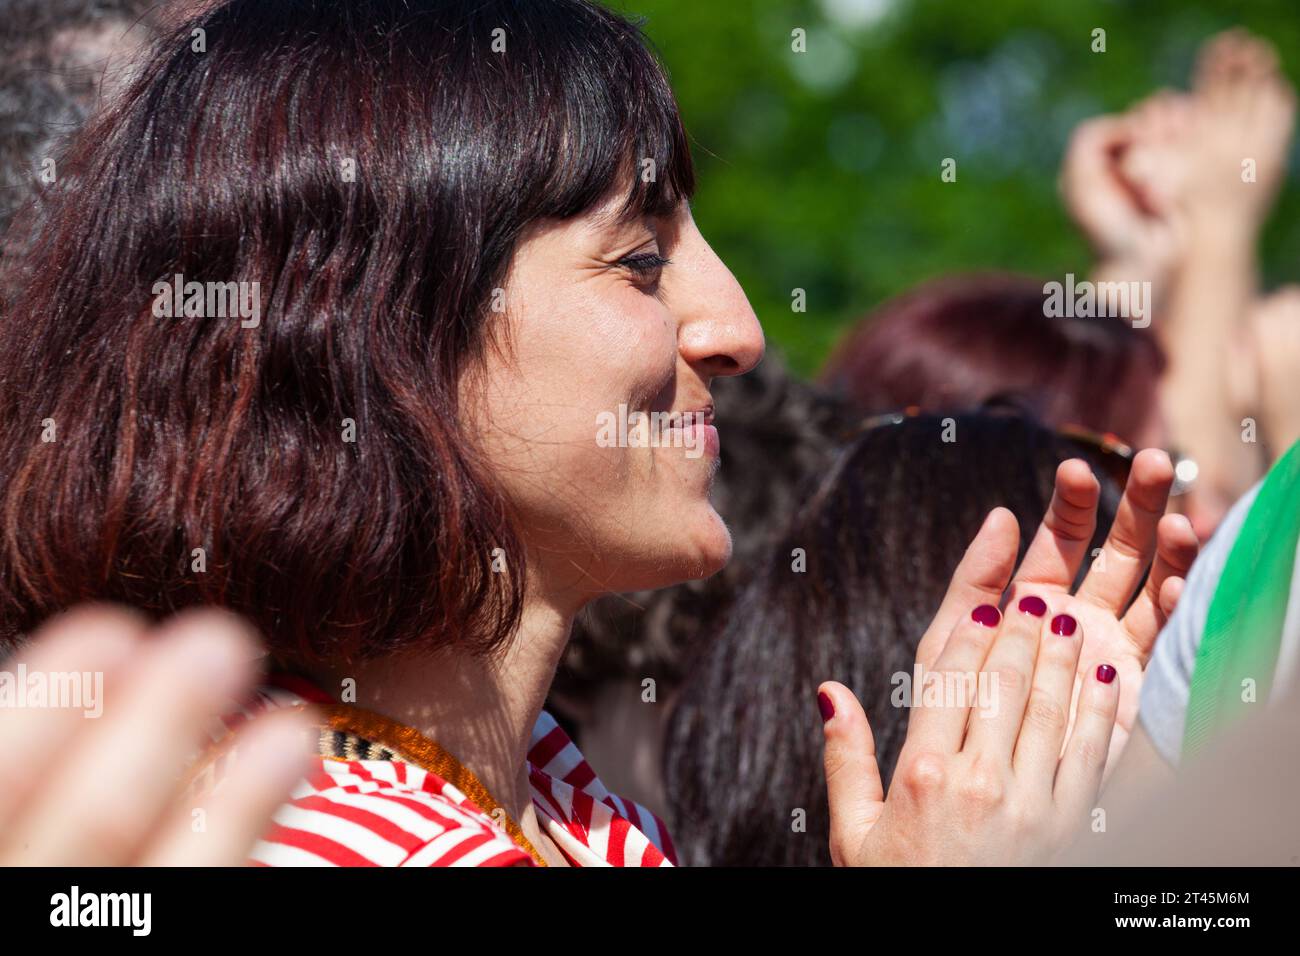 Gattatico, Reggio Emilia, Italia - 25 de abril de 2023: Vista lateral de la mujer joven aplaudiendo manos viendo concierto en el parque al aire libre Foto de stock